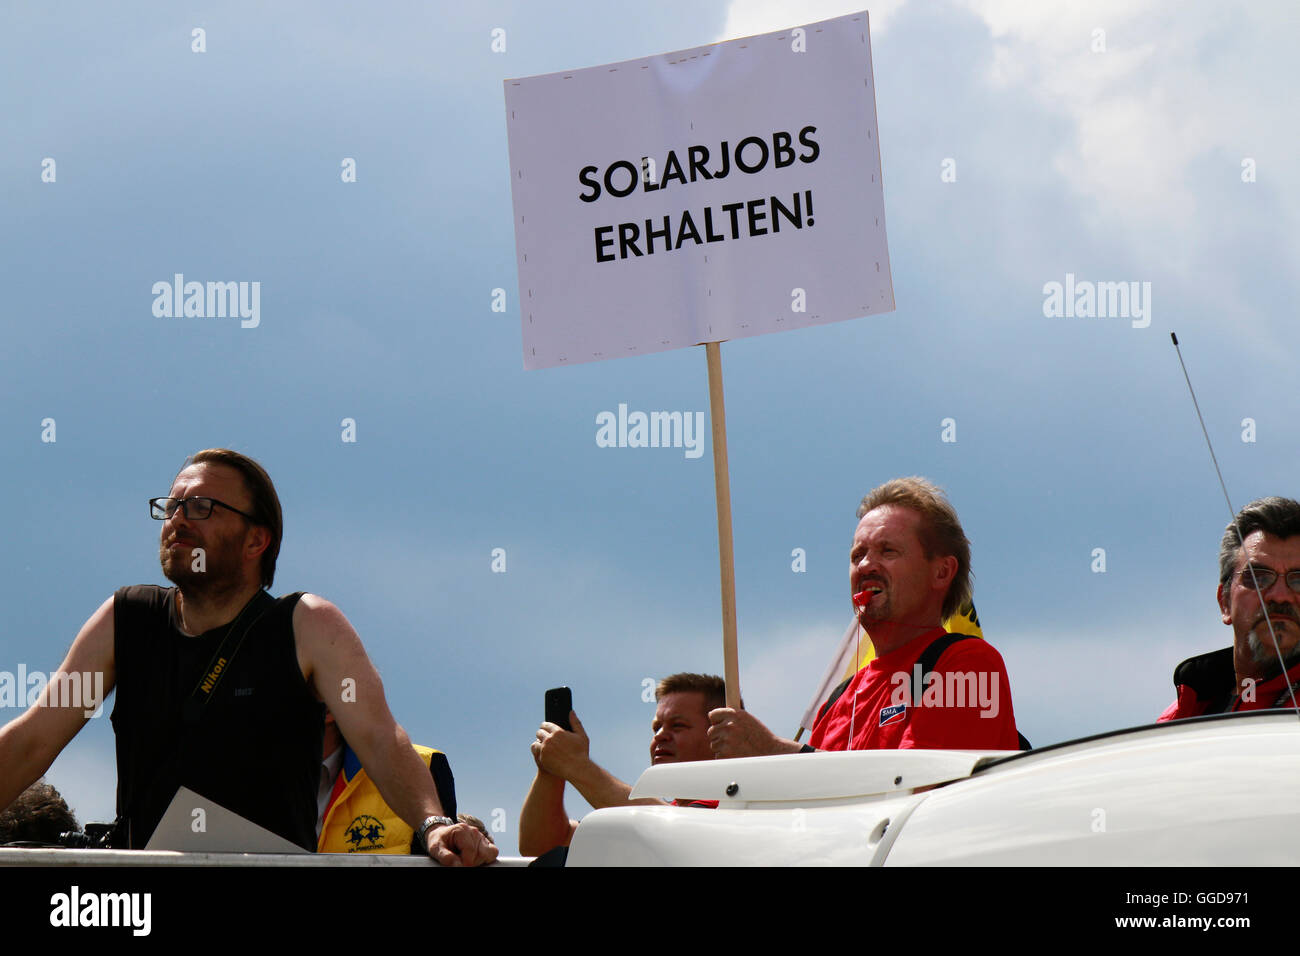 'Solarjobs erhalten' - Protestplakat auf Demonstration fuer regenerative Energien, 2. Juni 2016, Berlin-Tiergarten. Stock Photo